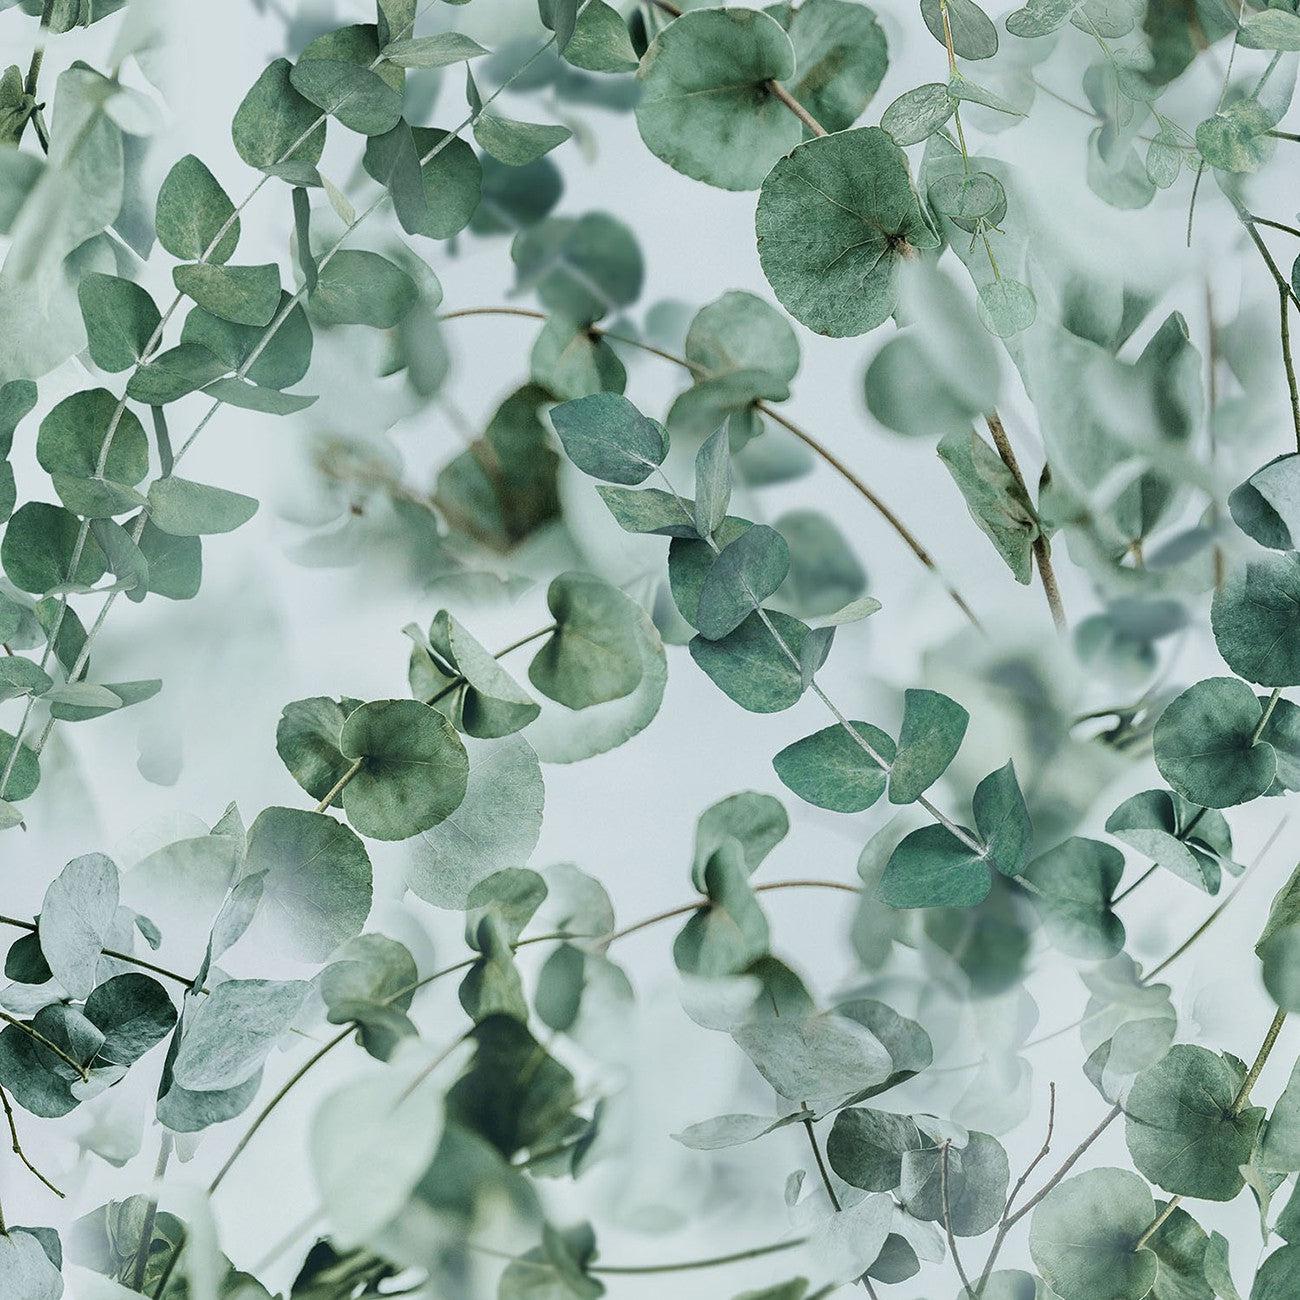 Họa tiết lá bạc trắng (White Silver Eucalyptus Leaf Pattern): Hãy ngắm nhìn họa tiết lá bạc trắng với nét vẽ tinh tế, sắc nét và có thể làm say lòng người yêu thiên nhiên. Mẫu mã này đang trở thành một xu hướng thiết kế với nhiều mục đích sử dụng khác nhau. Từ trang trí trong nhà, trang phục đến đồ dùng hằng ngày. Hãy cùng khám phá họa tiết này và tạo nên những trải nghiệm tuyệt vời cho cuộc sống của bạn! 